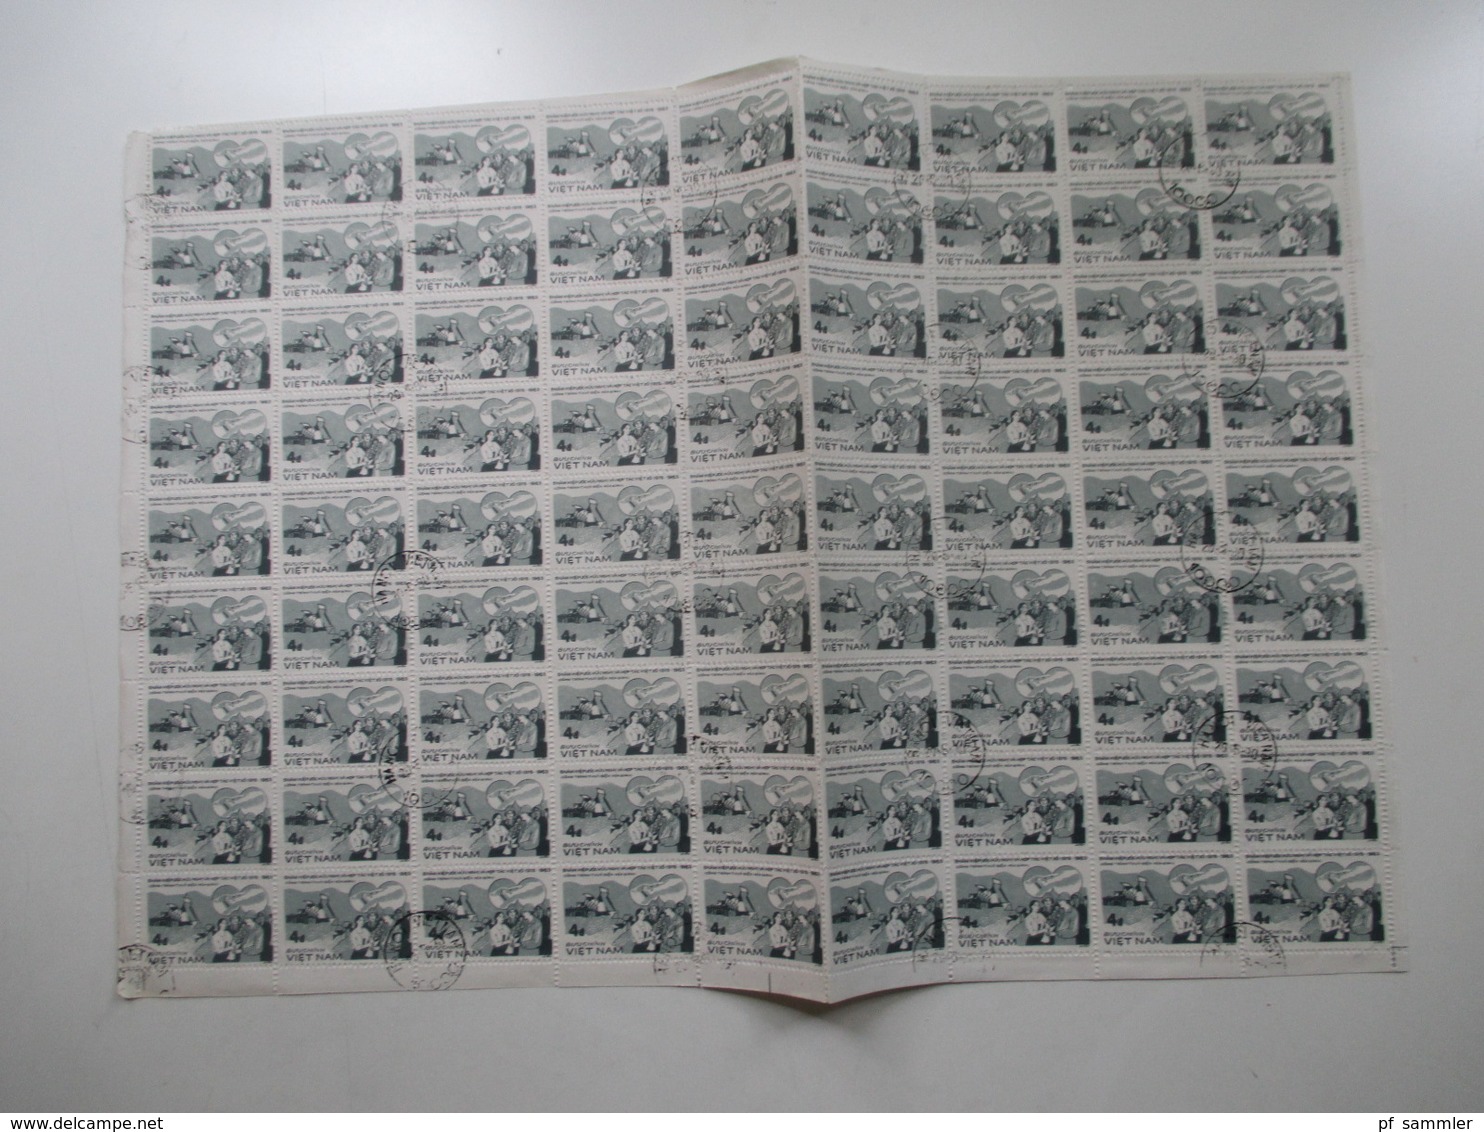 Vietnam ca. 1979 -80er Jahre Bogenposten / Bogenteile mehr als 75 Stk / über 4000 Marken gestempelt! Fundgrube! Hoher KW